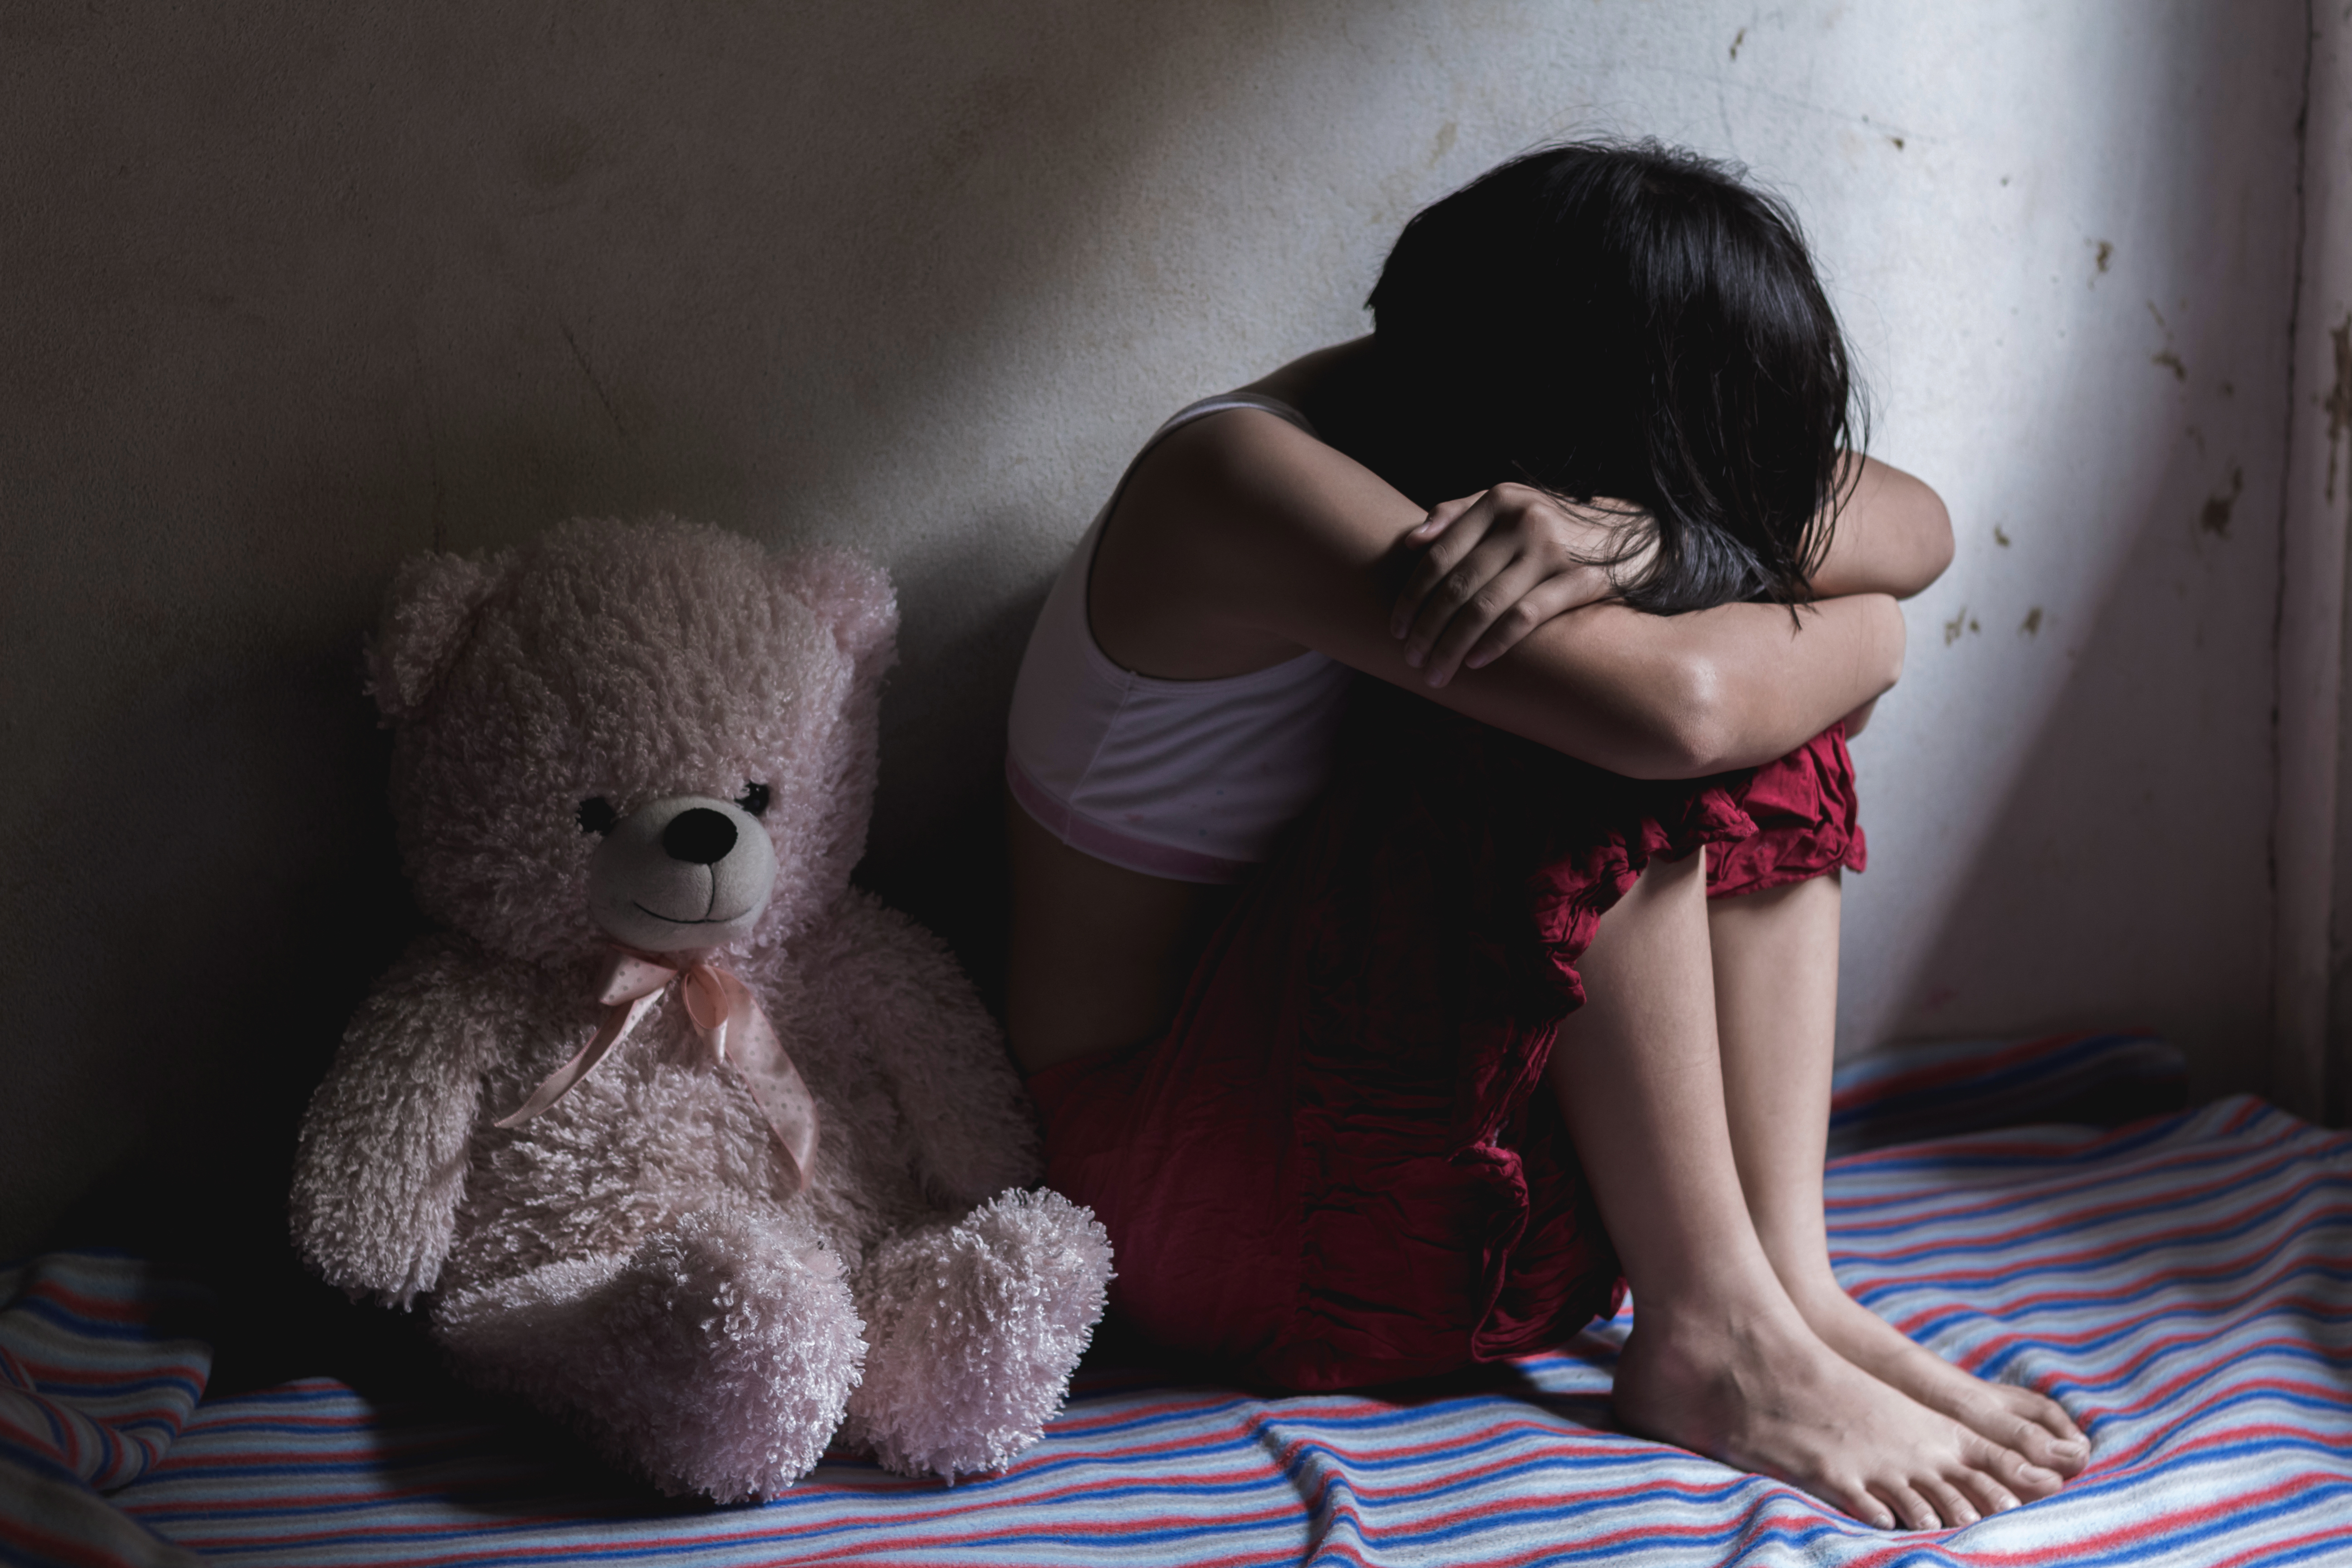 Chinurile îngrozitoare la care a fost supusă o fetiță de 8 ani de către părinți. Pedeapsa acestora a fost redusă drastic